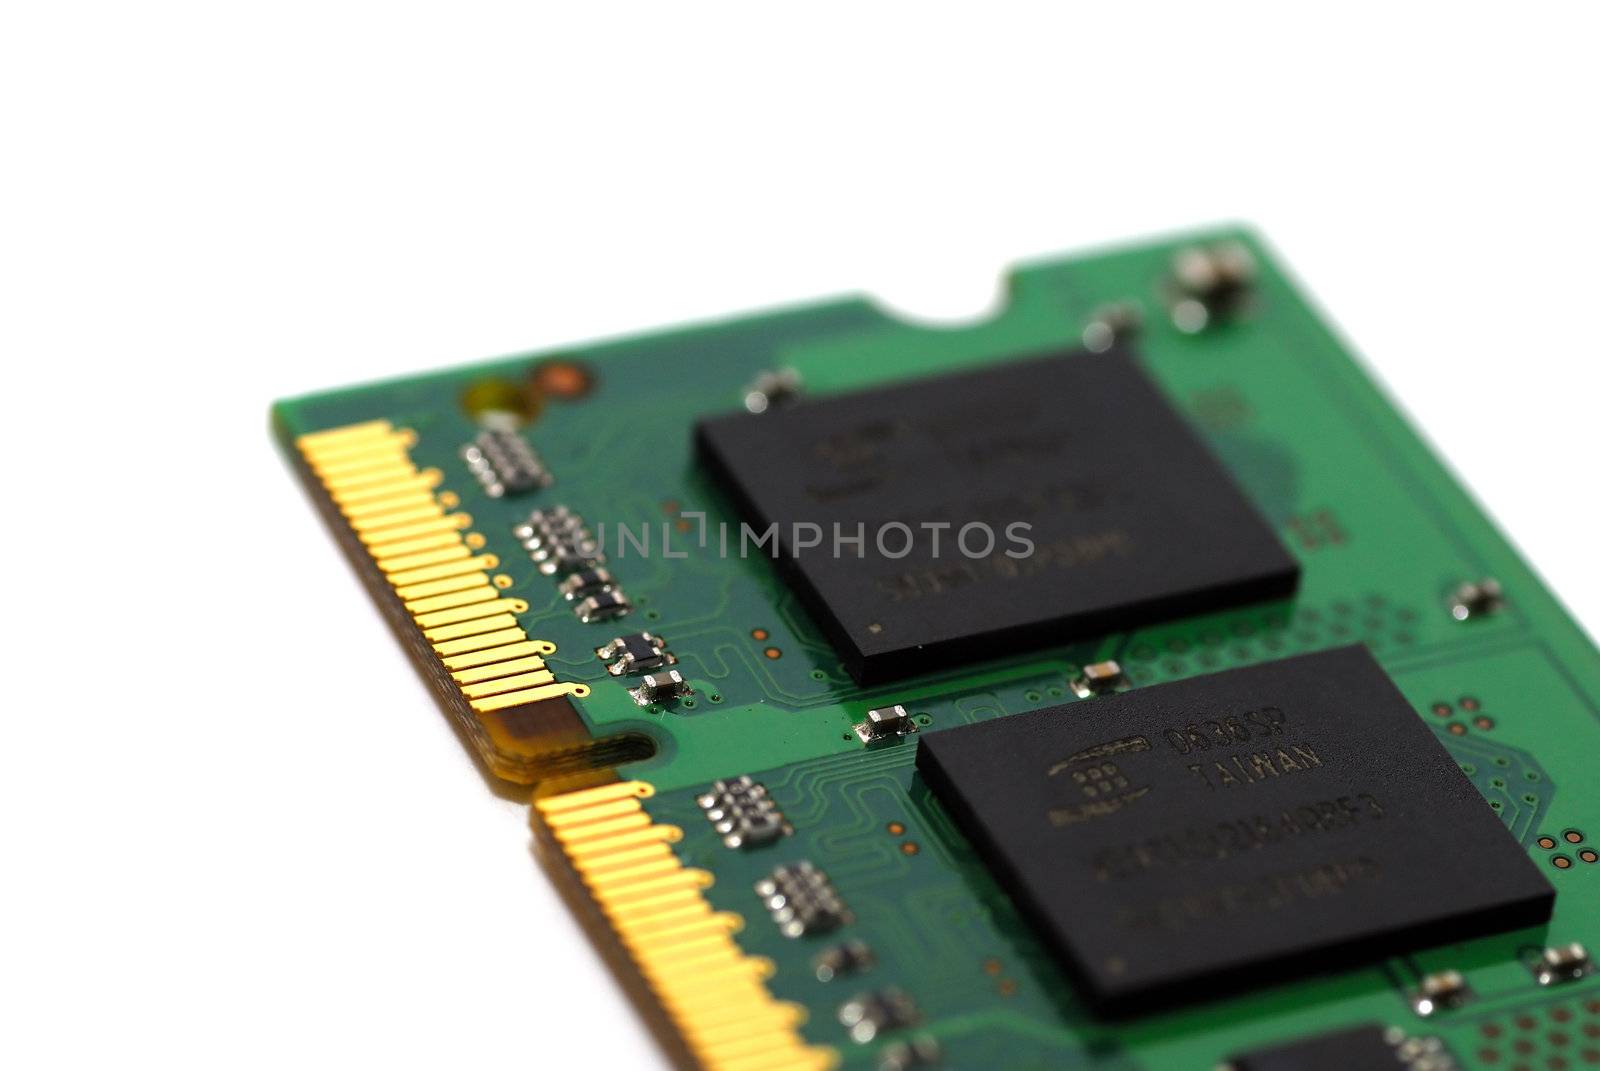 Macro shot of a computer RAM memory